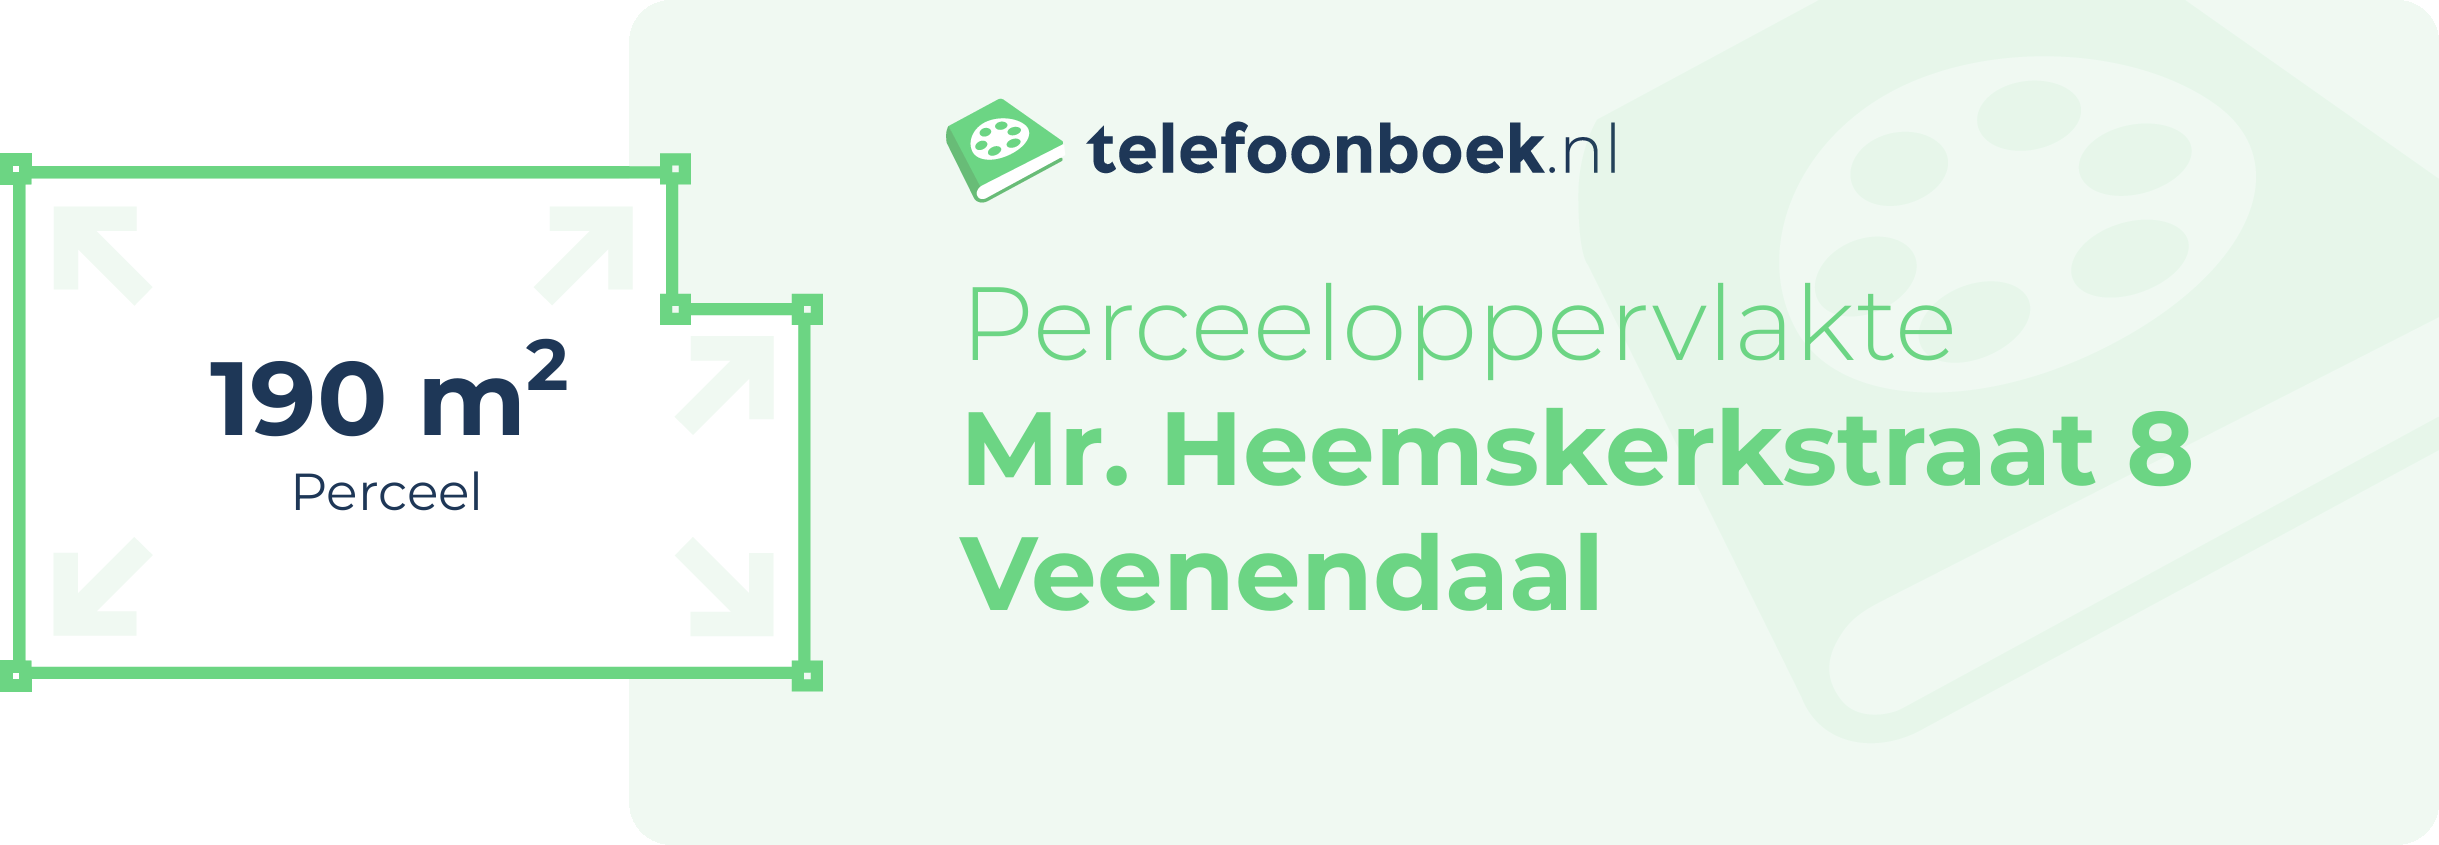 Perceeloppervlakte Mr. Heemskerkstraat 8 Veenendaal